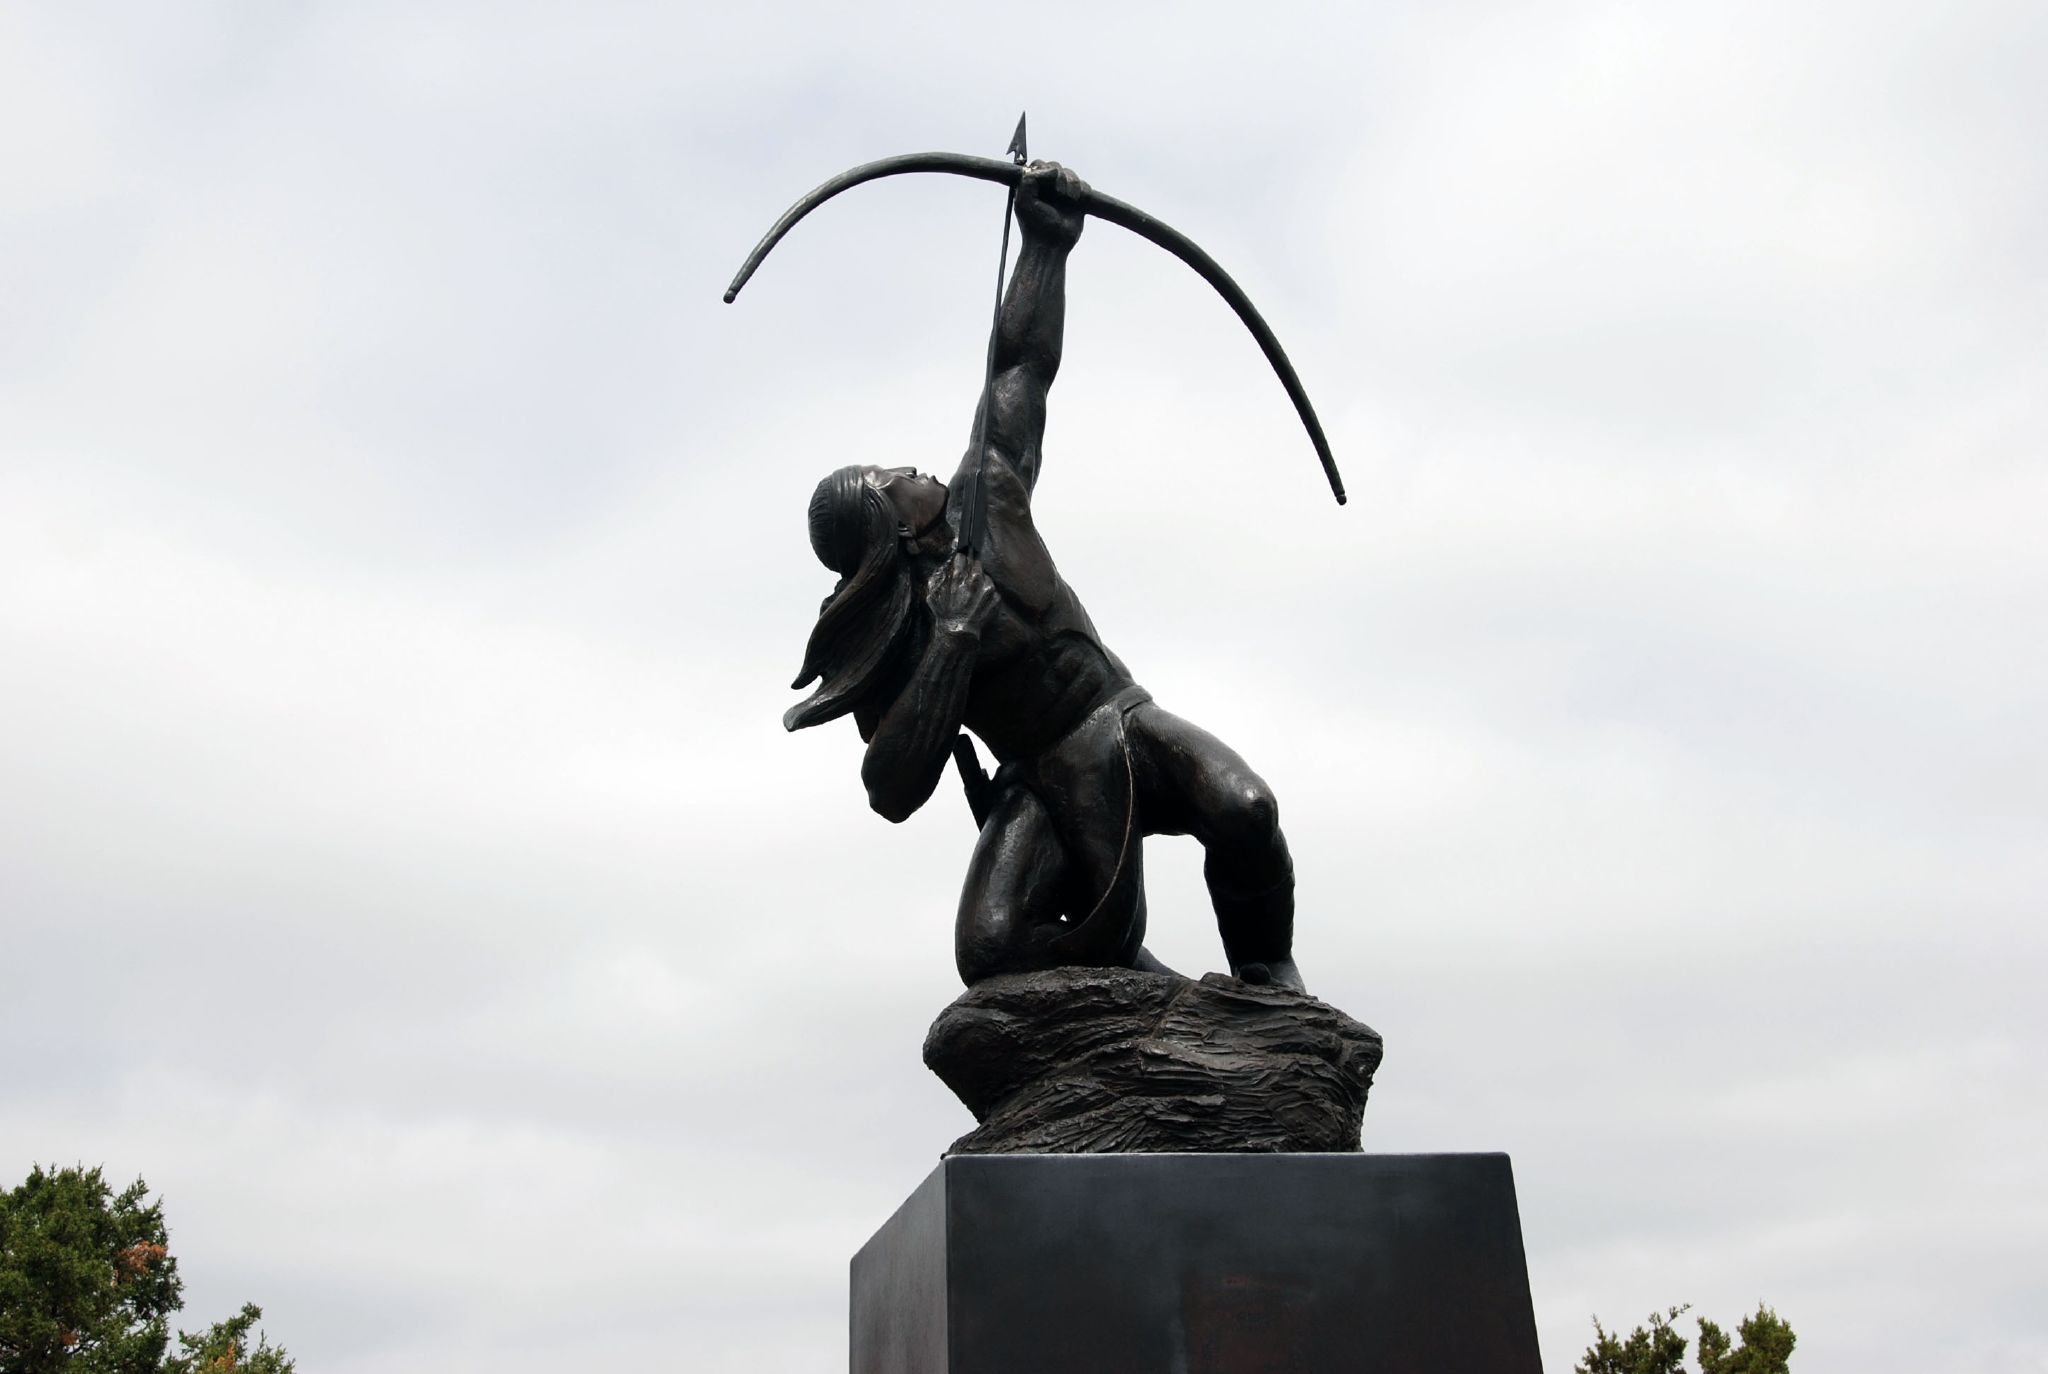 Allan Houser Chiricahua Apache sculptor